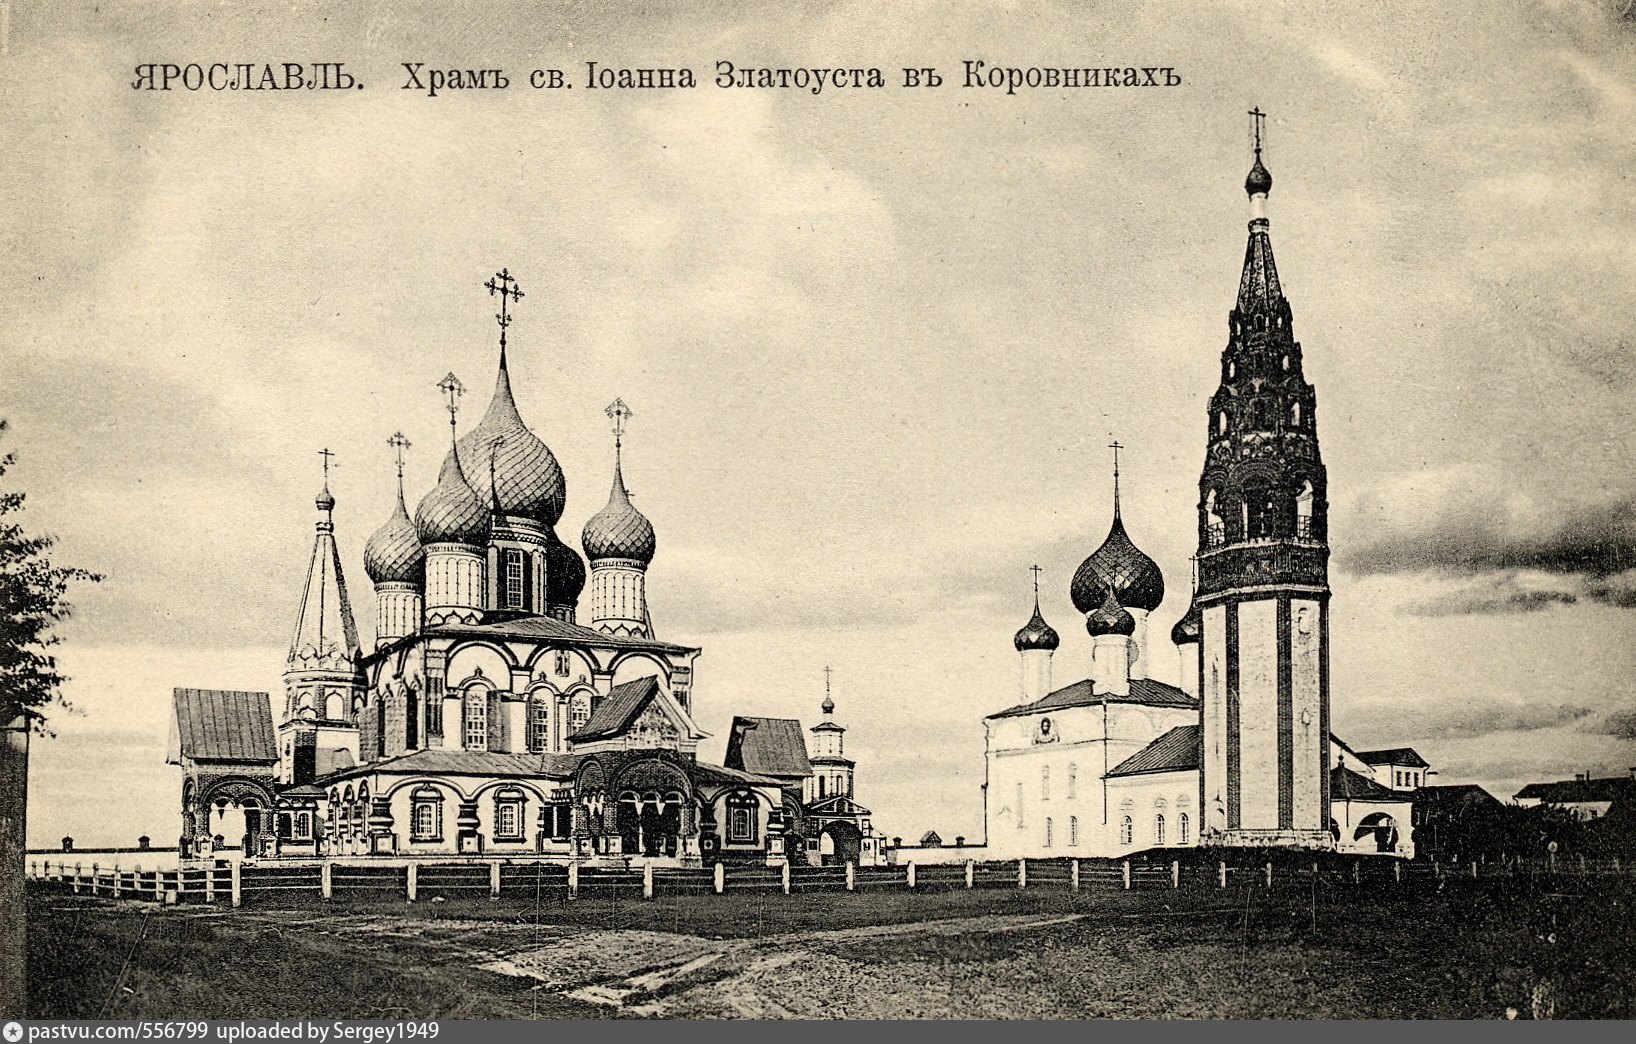 Церковь Иоанна Златоуста в коровниках Ярославль 18 век